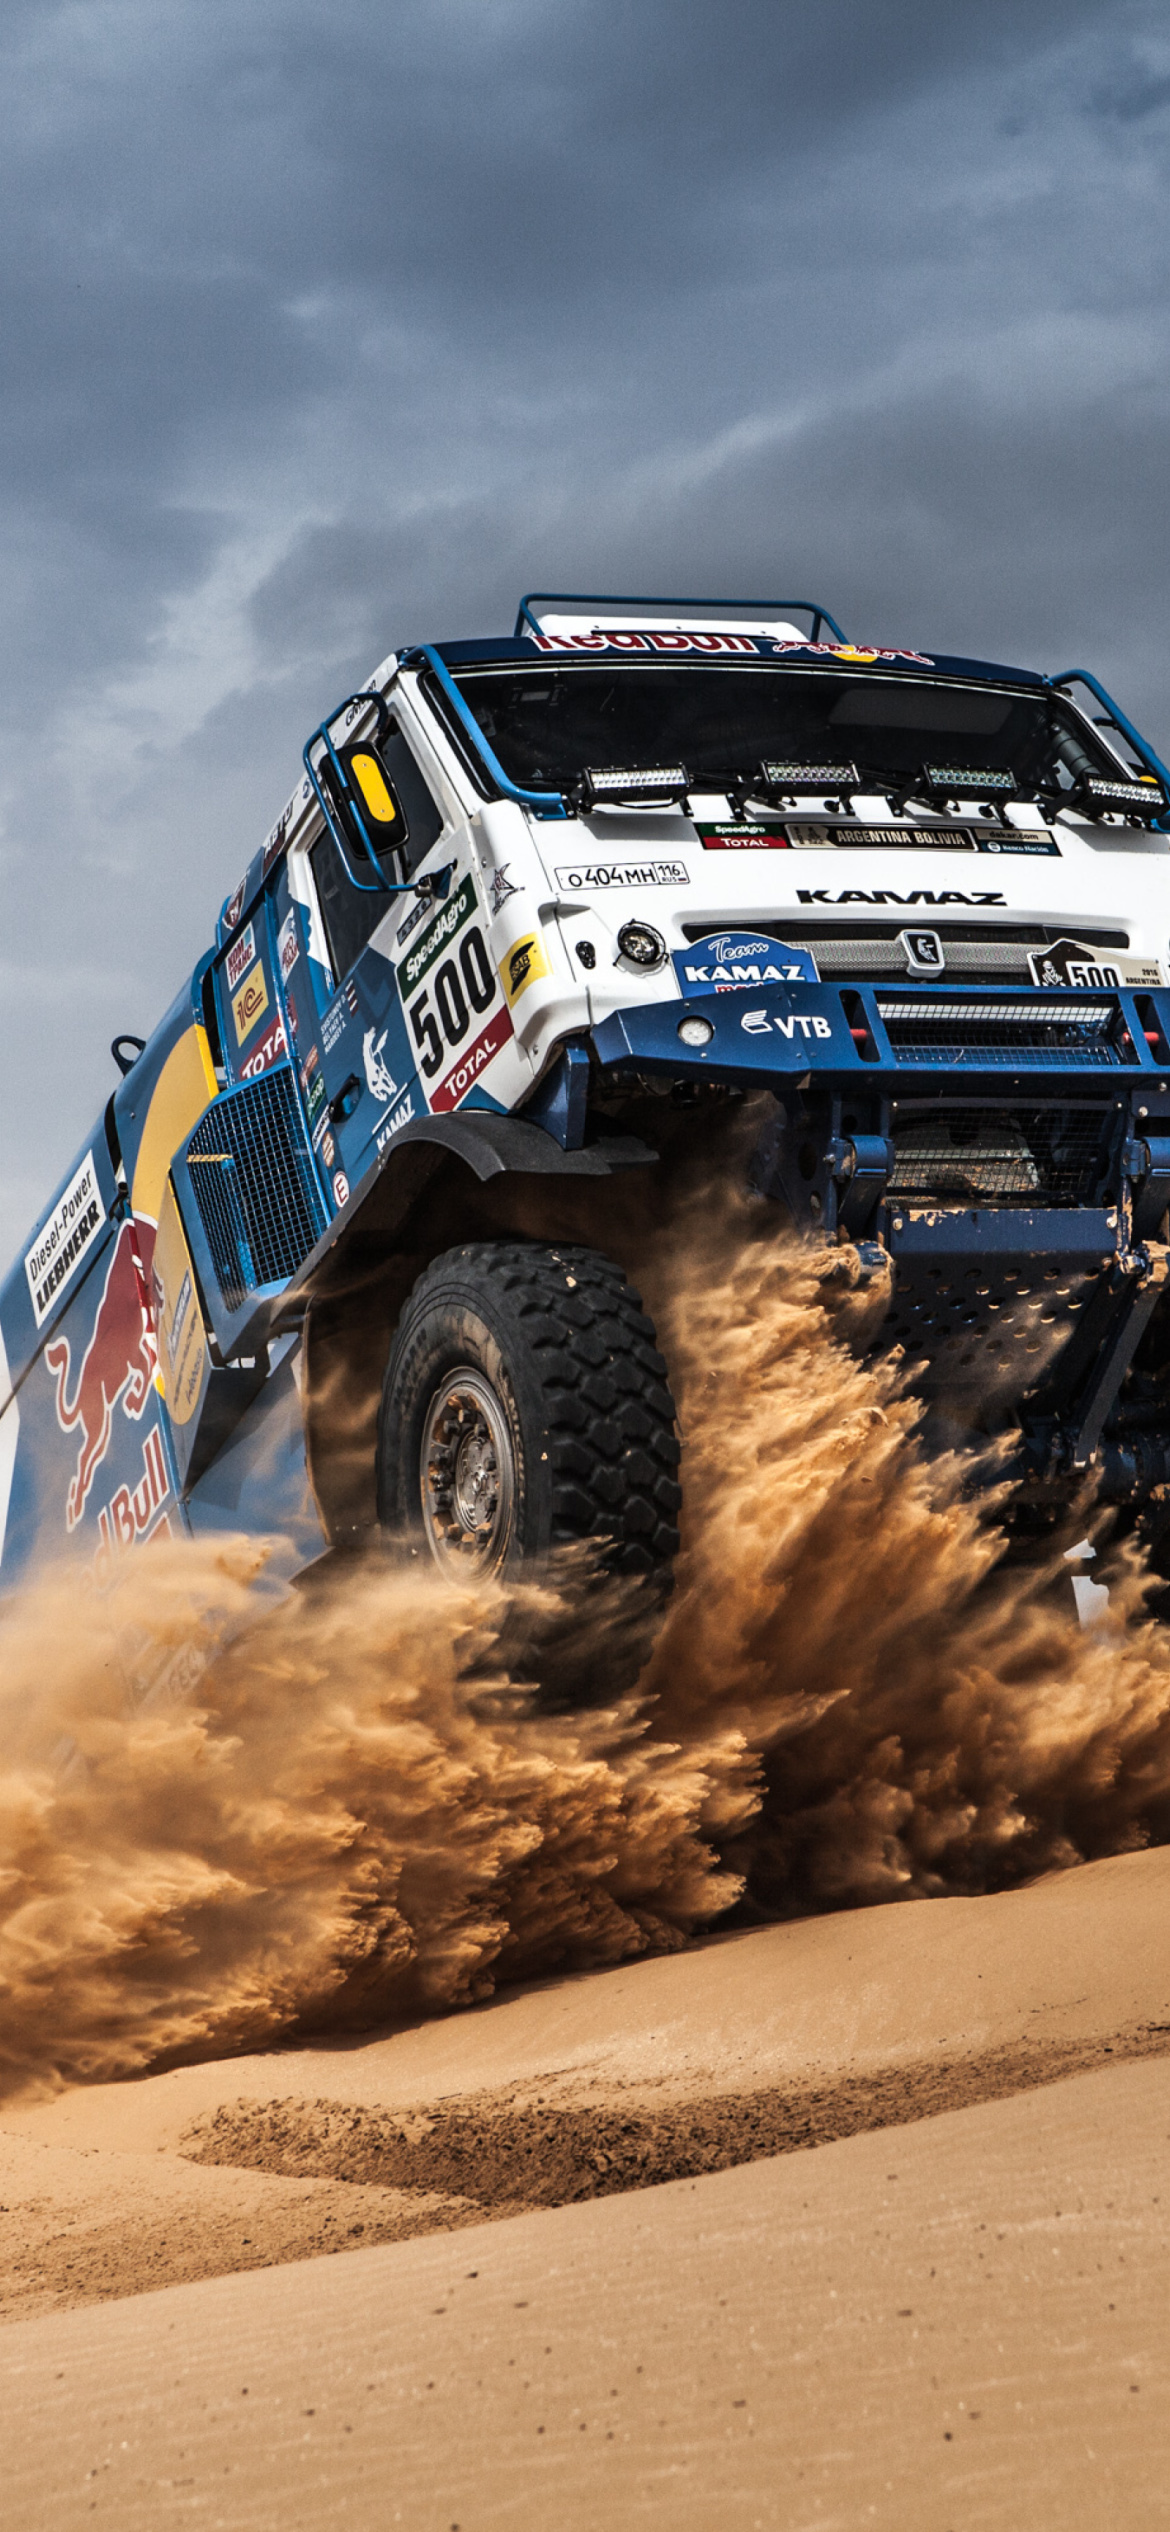 Dakar Rally: Kamaz truck, The Russian motorsport team, A long-time winner and medalist. 1170x2540 HD Wallpaper.